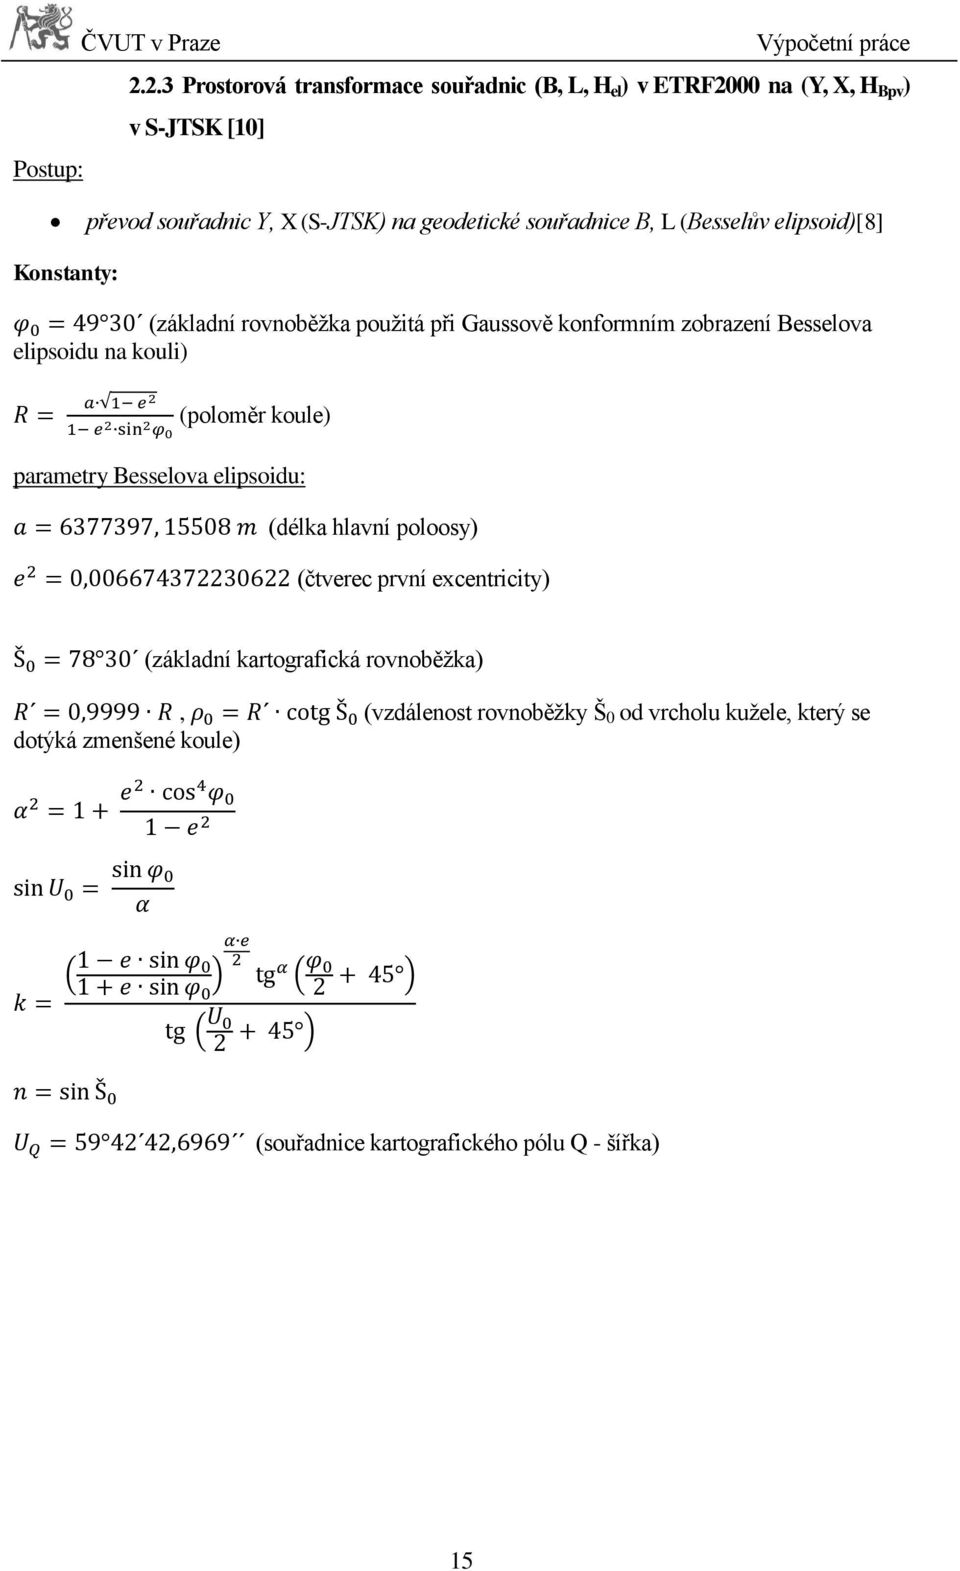 geodetické souřadnice B, L (Besselův elipsoid)[8] Konstanty: (základní rovnoběžka použitá při Gaussově konformním zobrazení Besselova elipsoidu